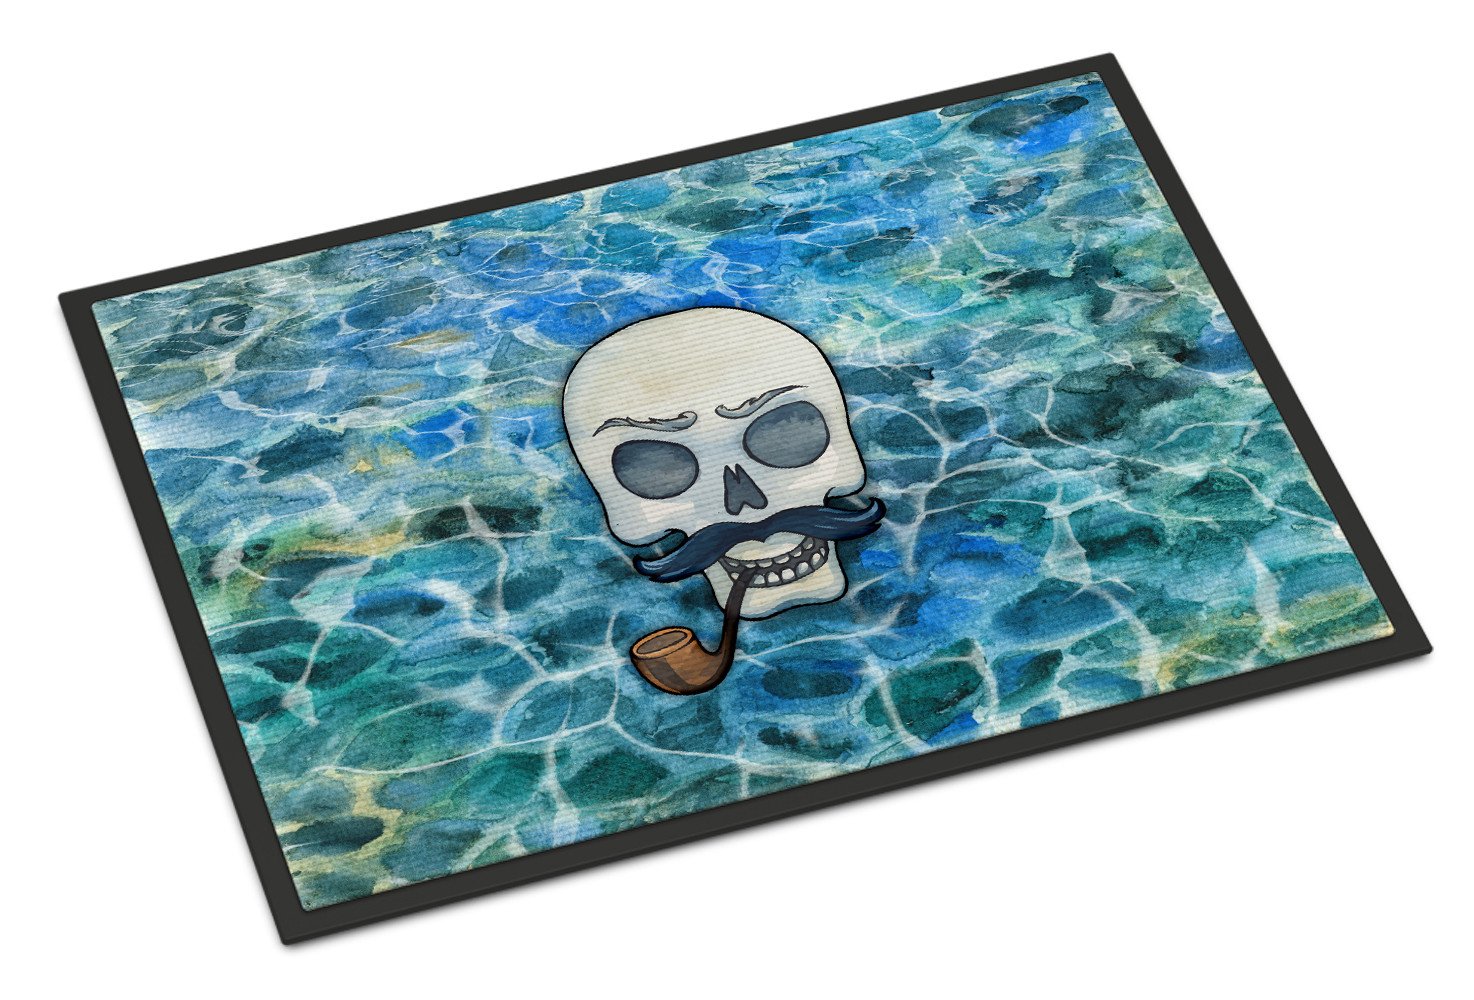 Skeleton Skull Pirate Indoor or Outdoor Mat 24x36 BB5345JMAT by Caroline's Treasures